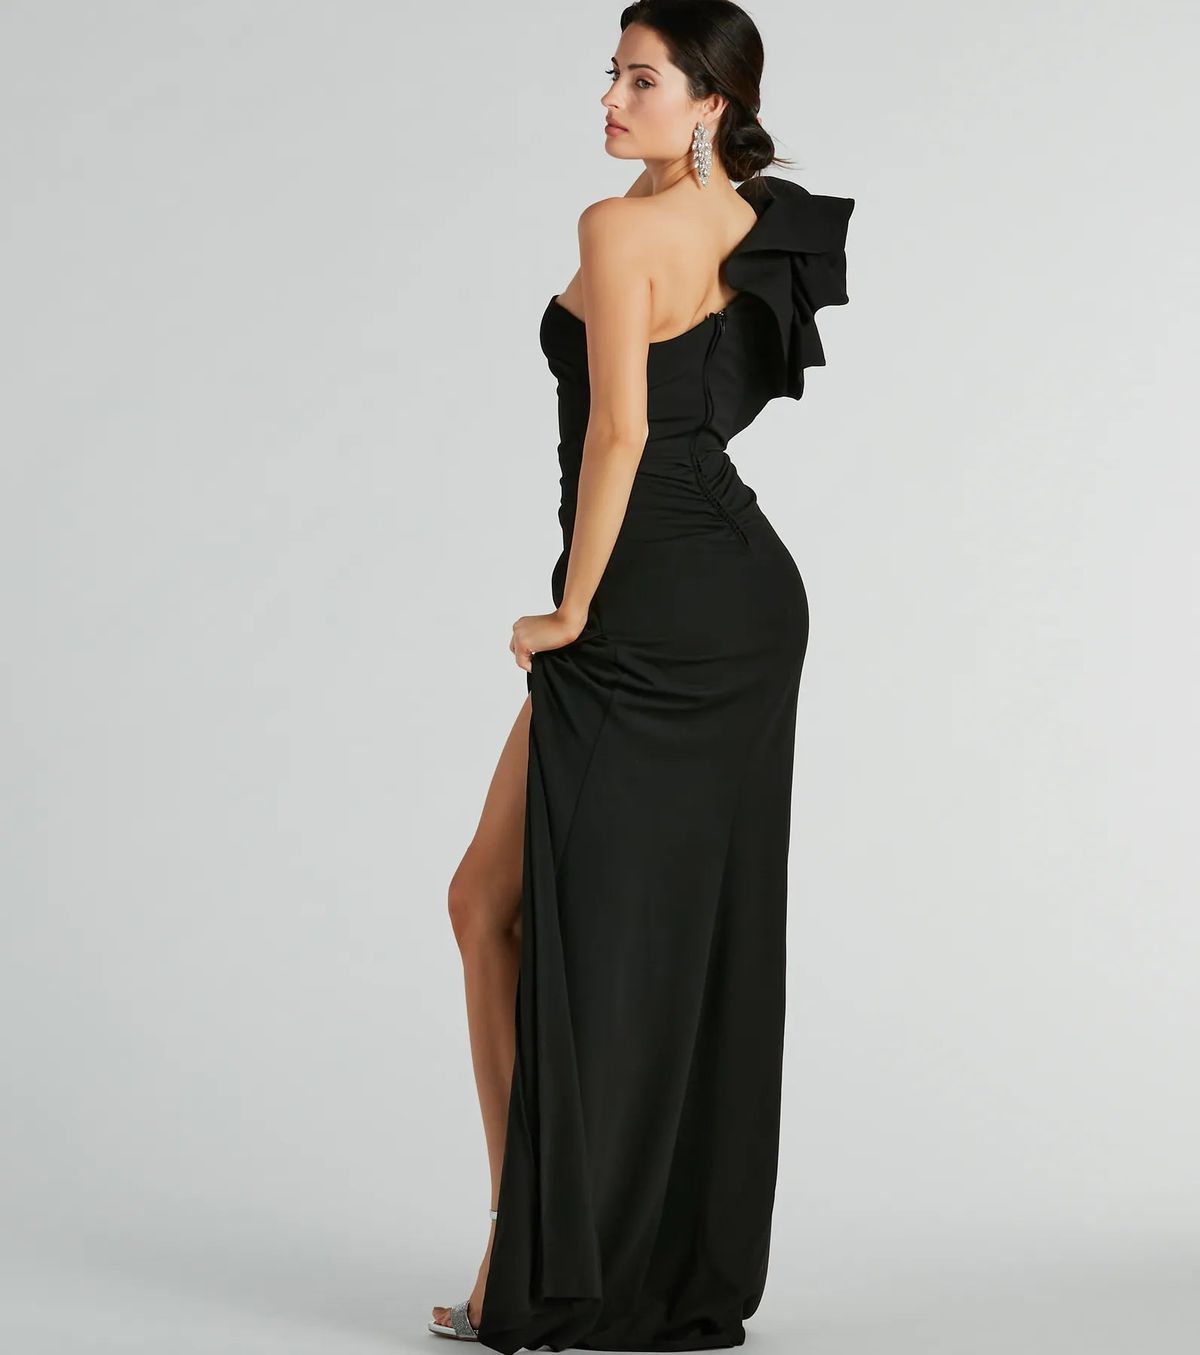 Style 05002-8213 Windsor Size S Bridesmaid One Shoulder Black Side Slit Dress on Queenly